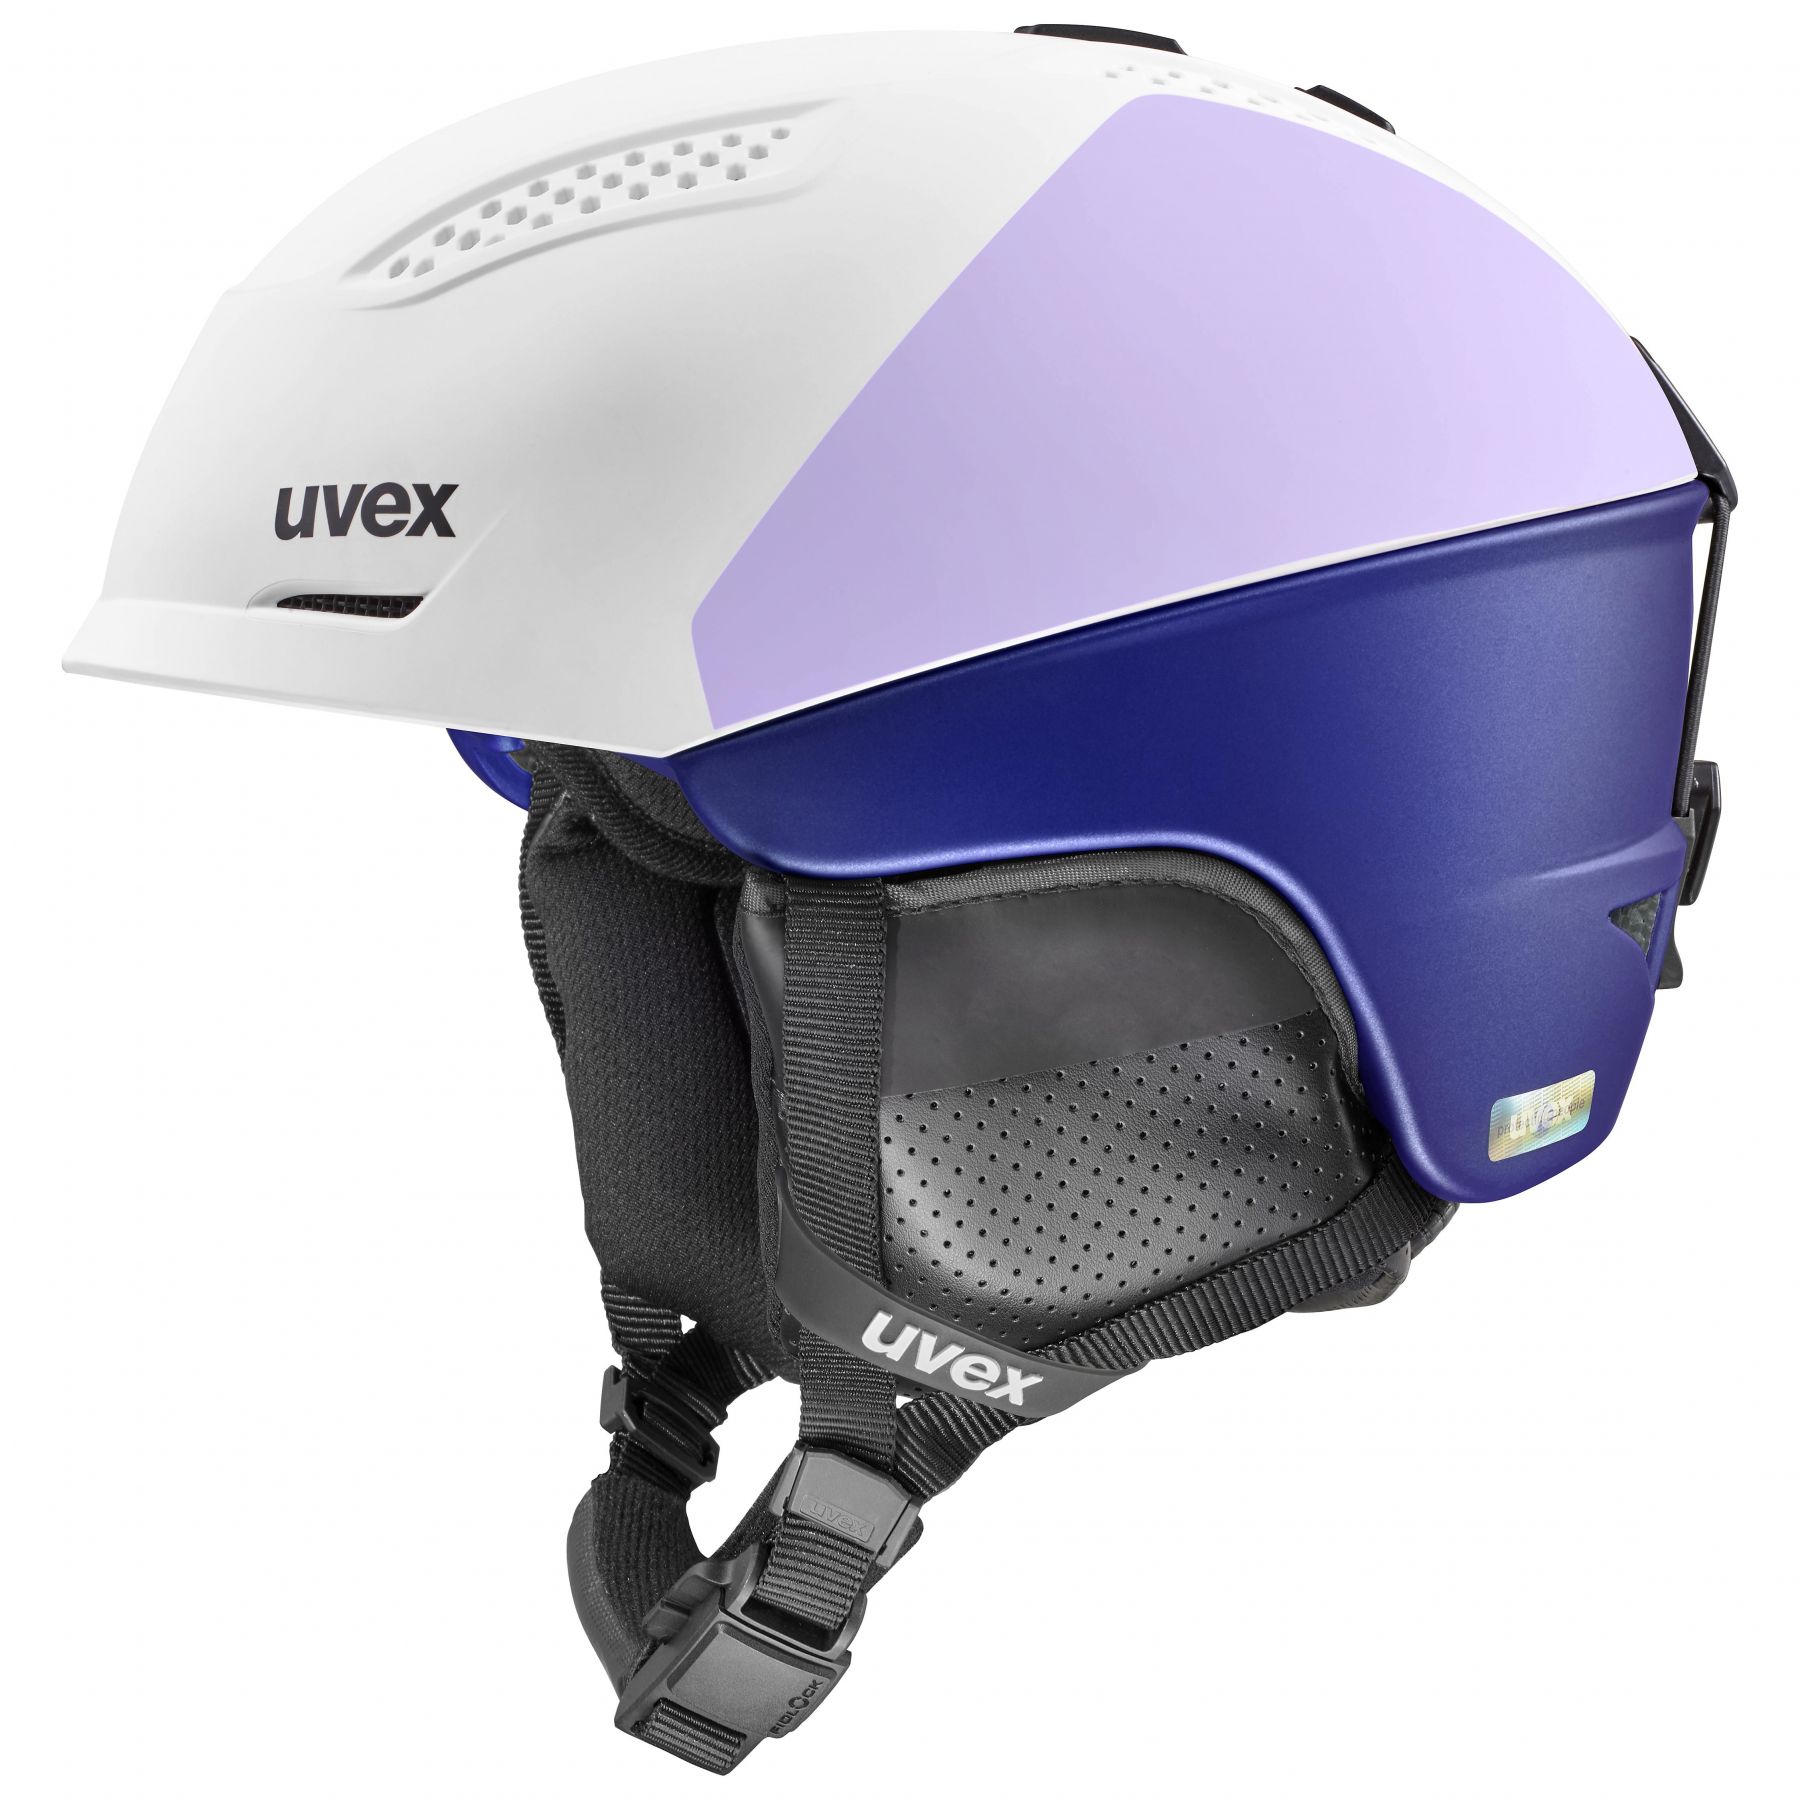 Billede af Uvex Ultra Pro, skihjelm, dame, hvid/lilla